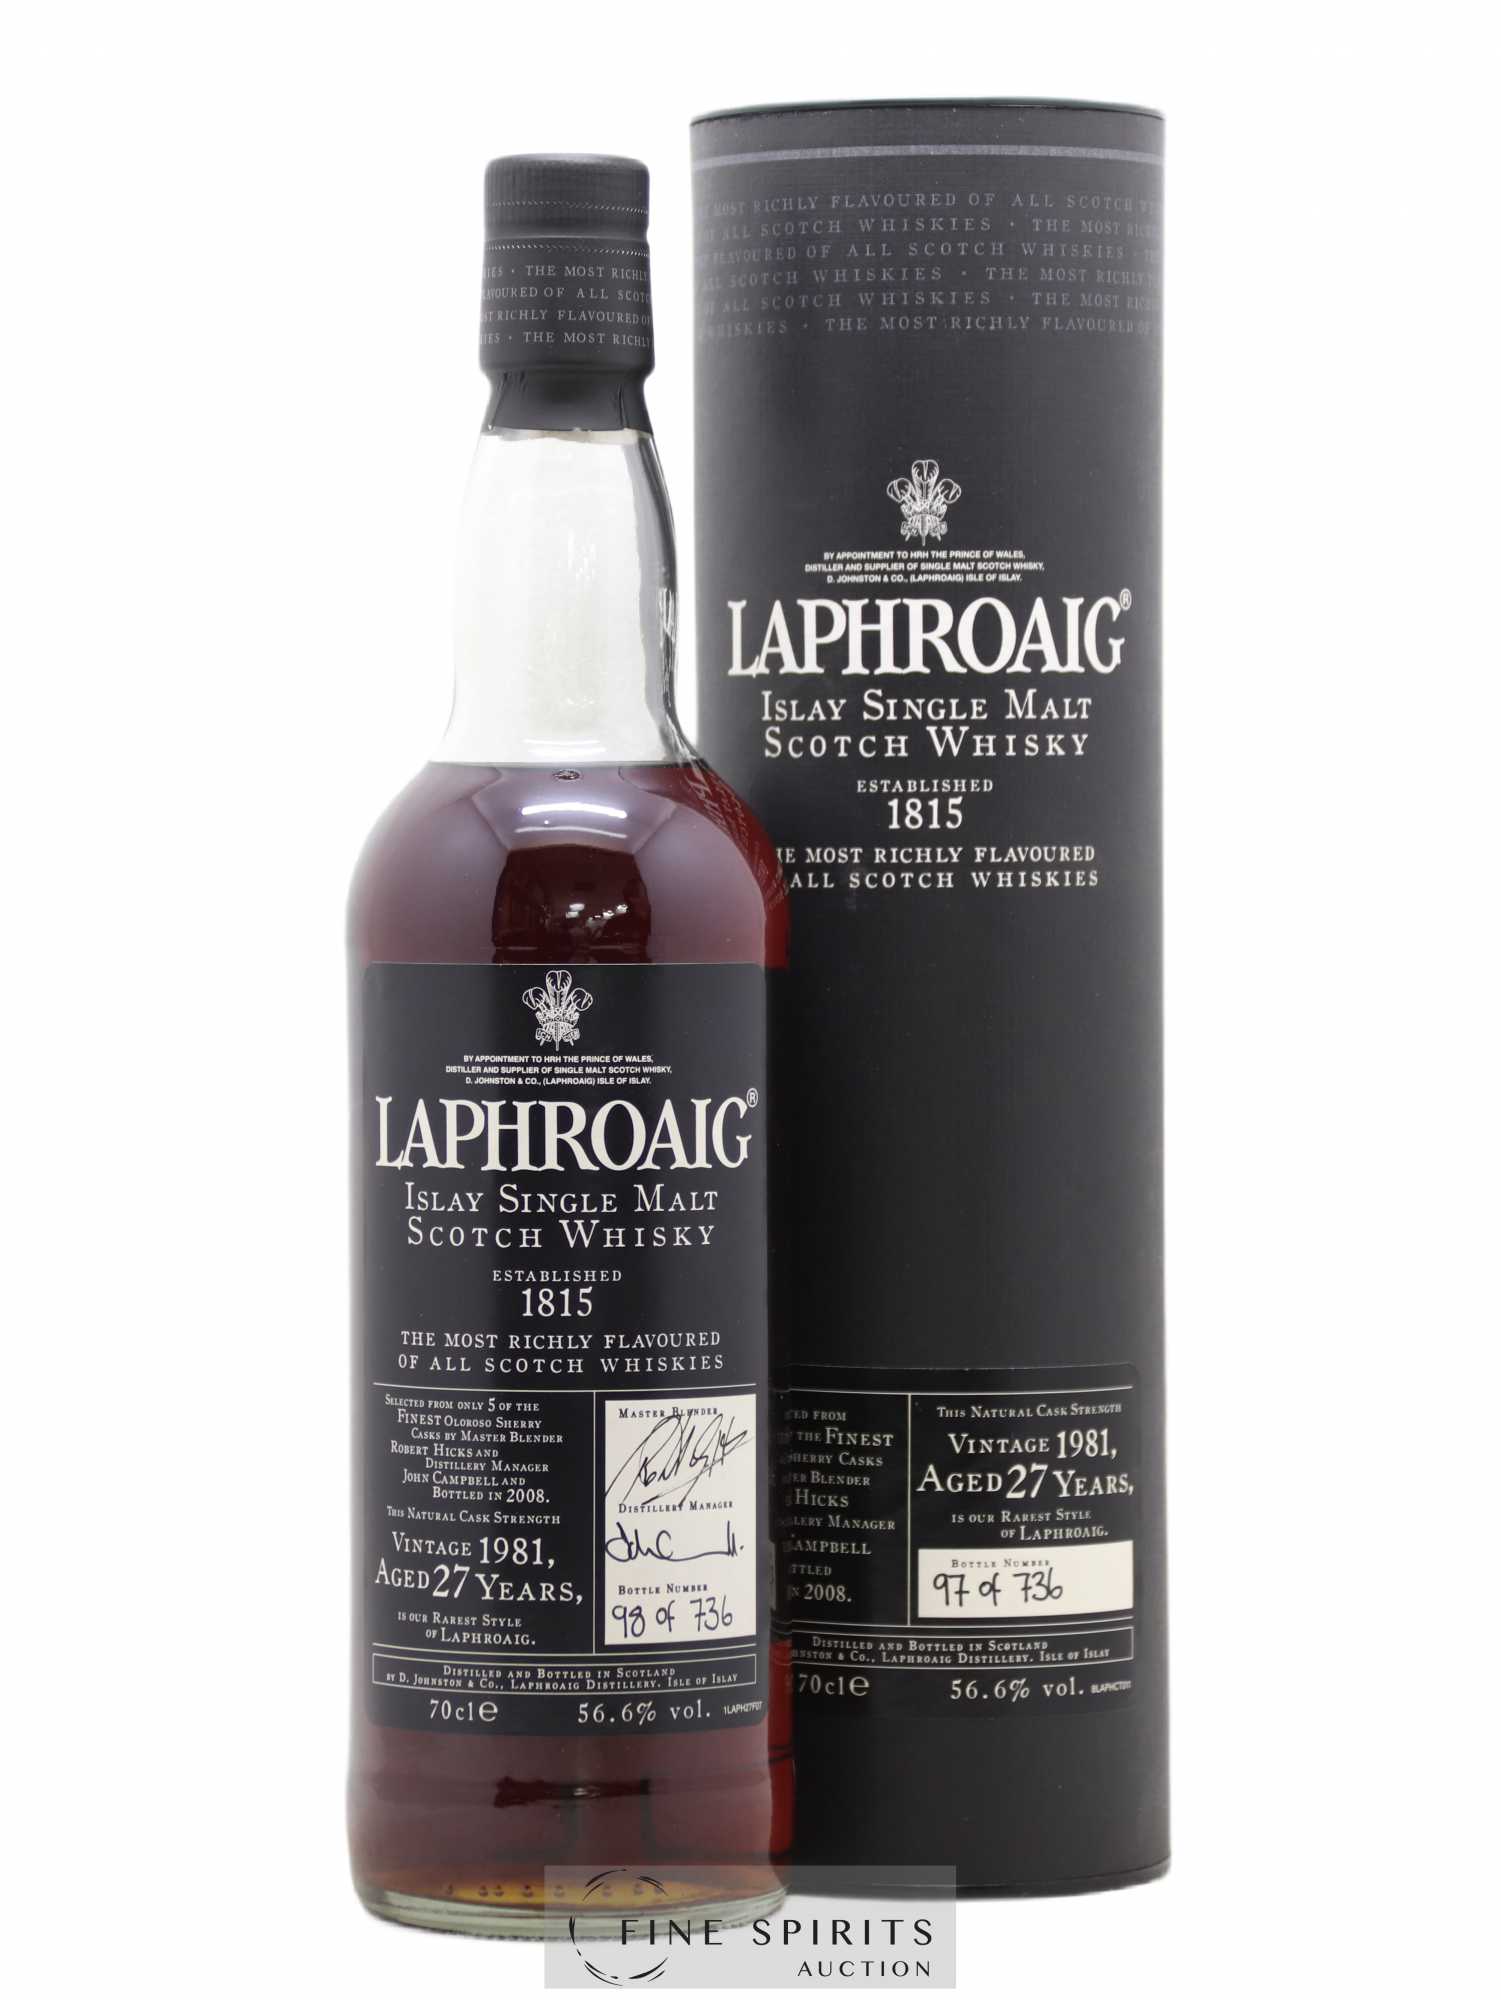 Laphroaig 27 years 1981 Of. Oloroso Sherry Casks - One of 736 - bottled 2008 